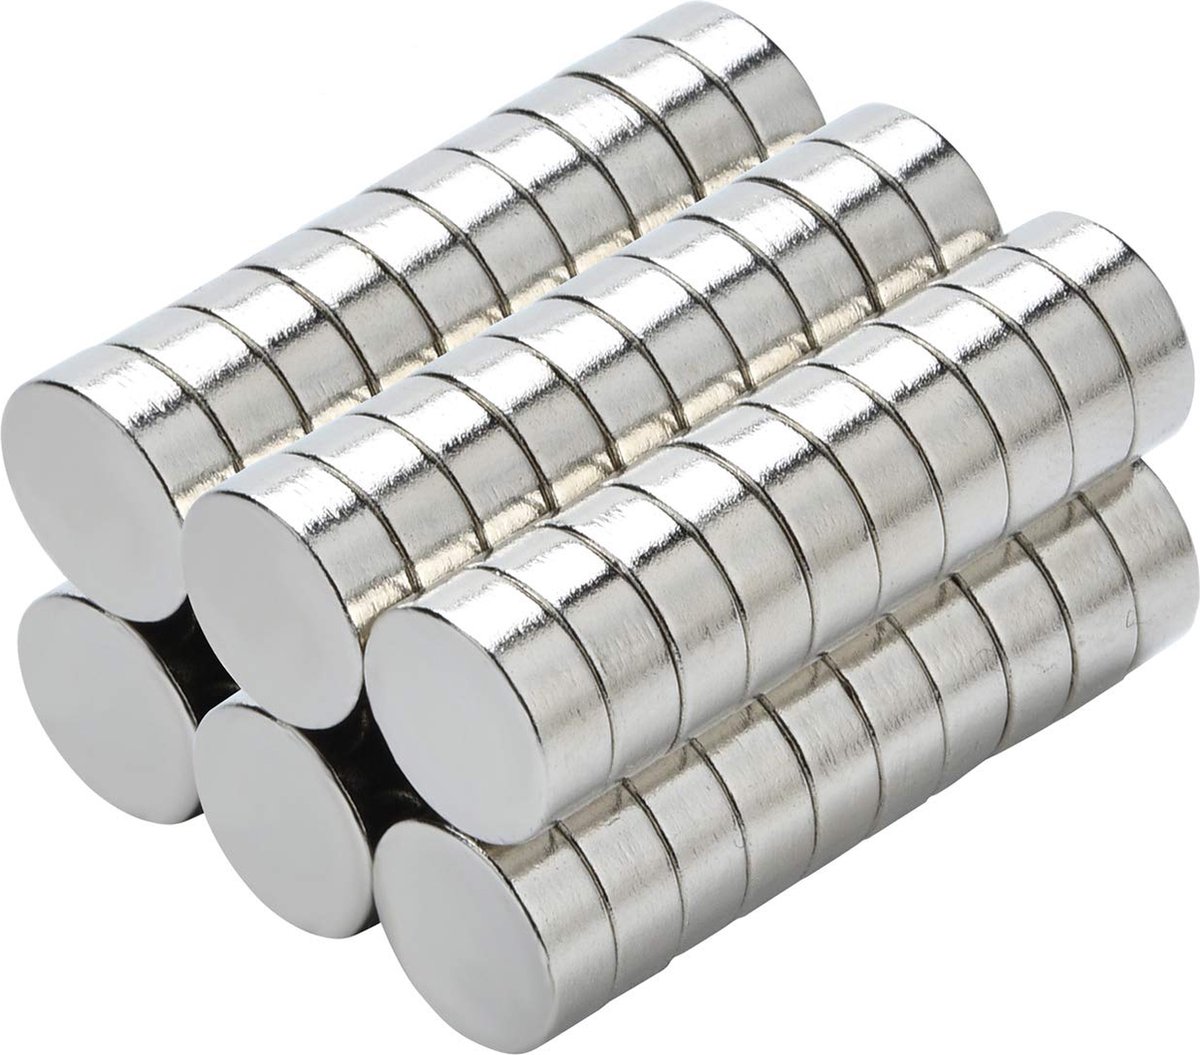 Yizhet 50 stuks magneten magneet huishoudelijke magneten 8x3 mm mini magneet voor magneetbord